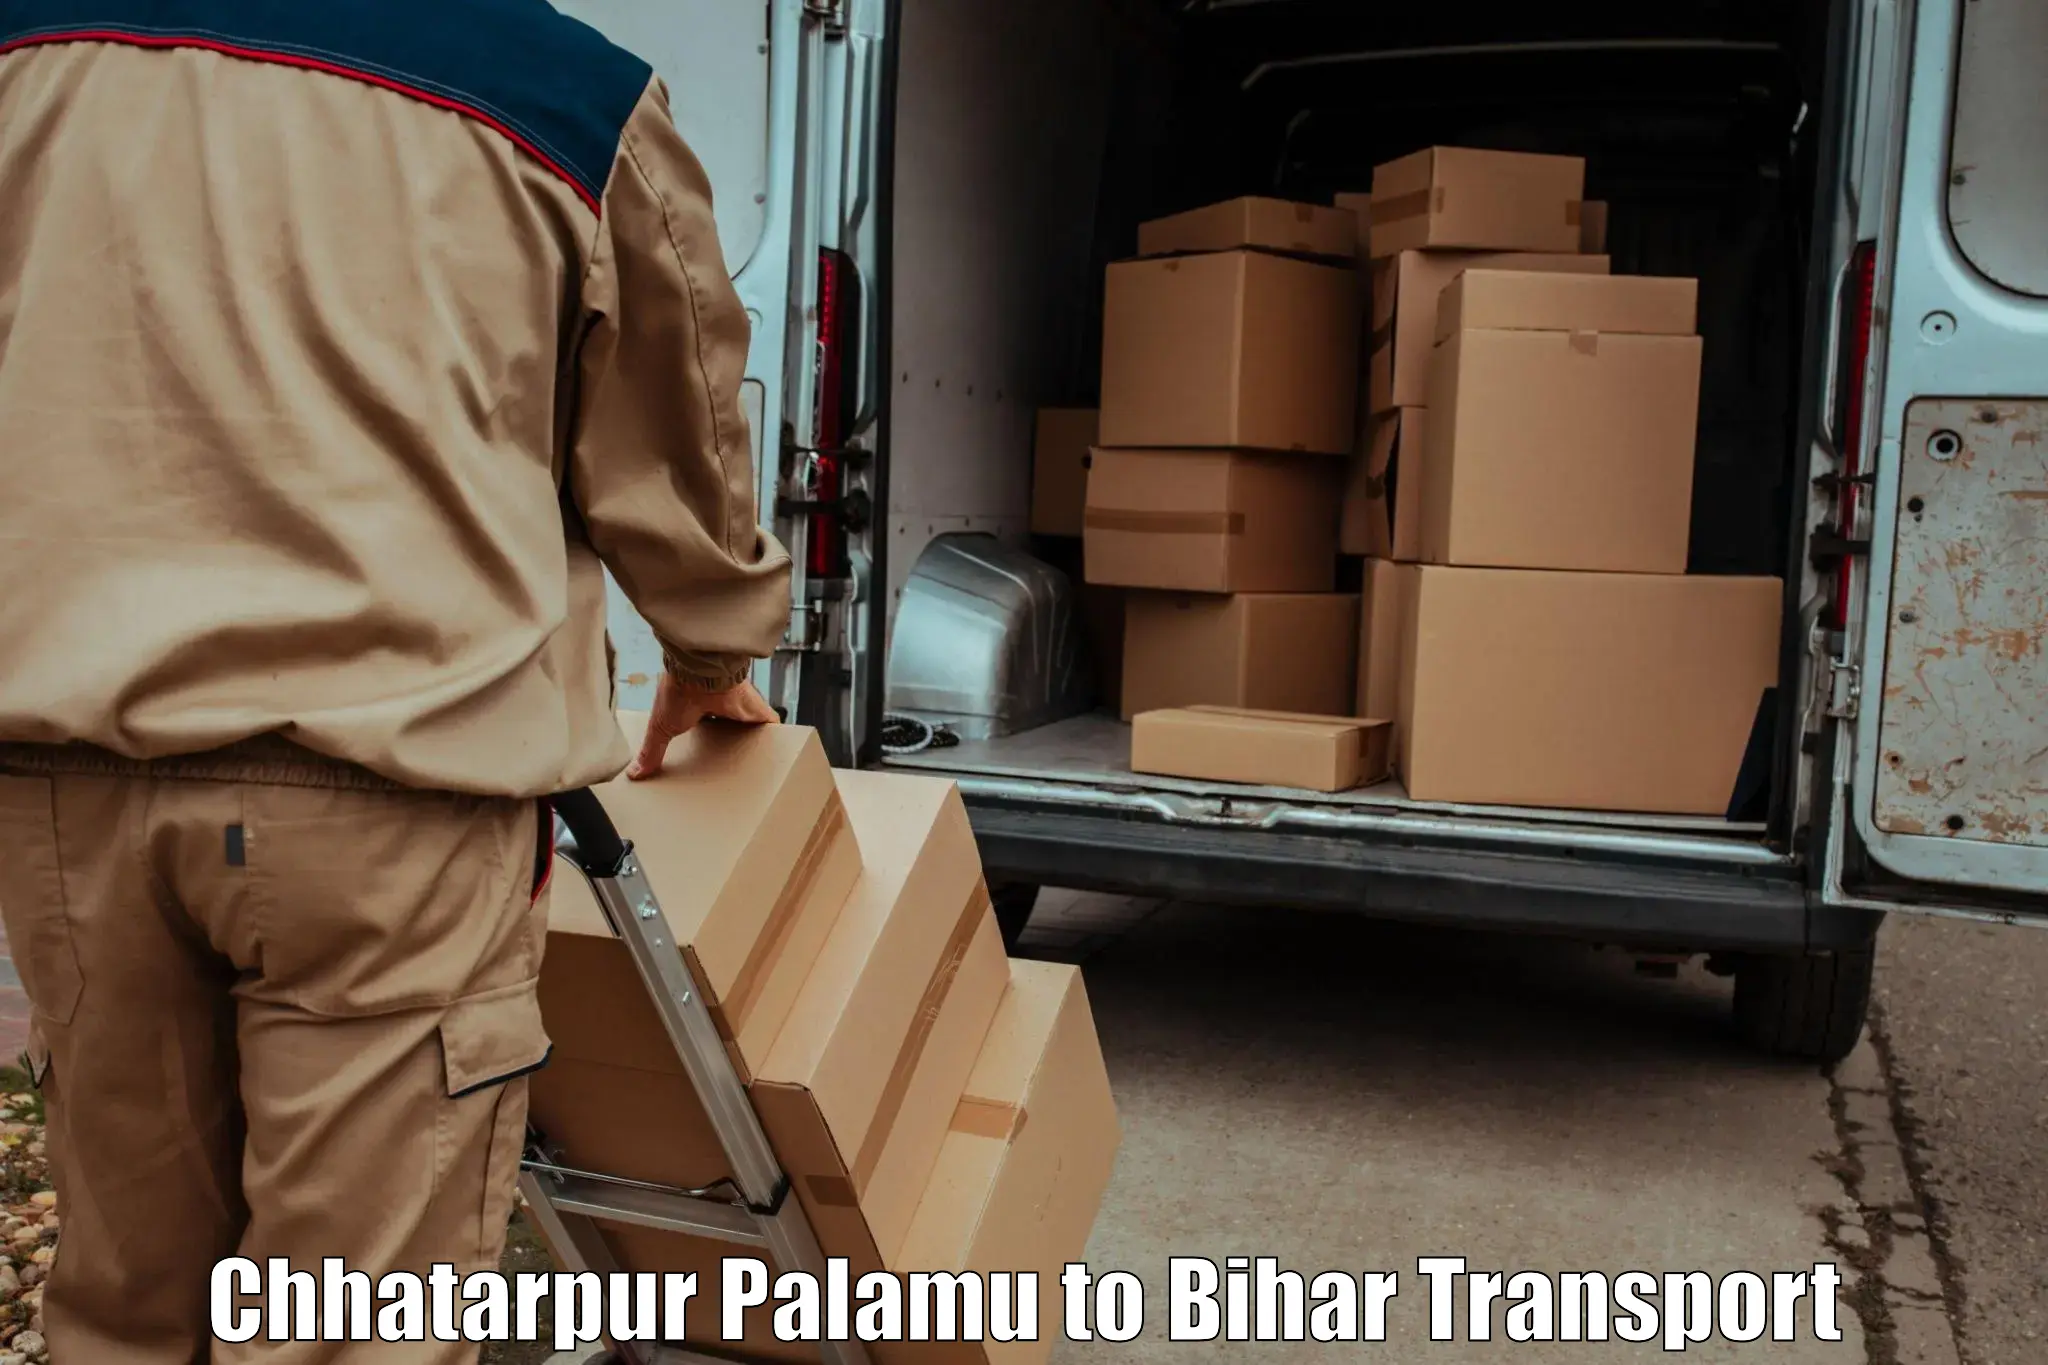 Daily parcel service transport Chhatarpur Palamu to Jagdishpur Bhojpur